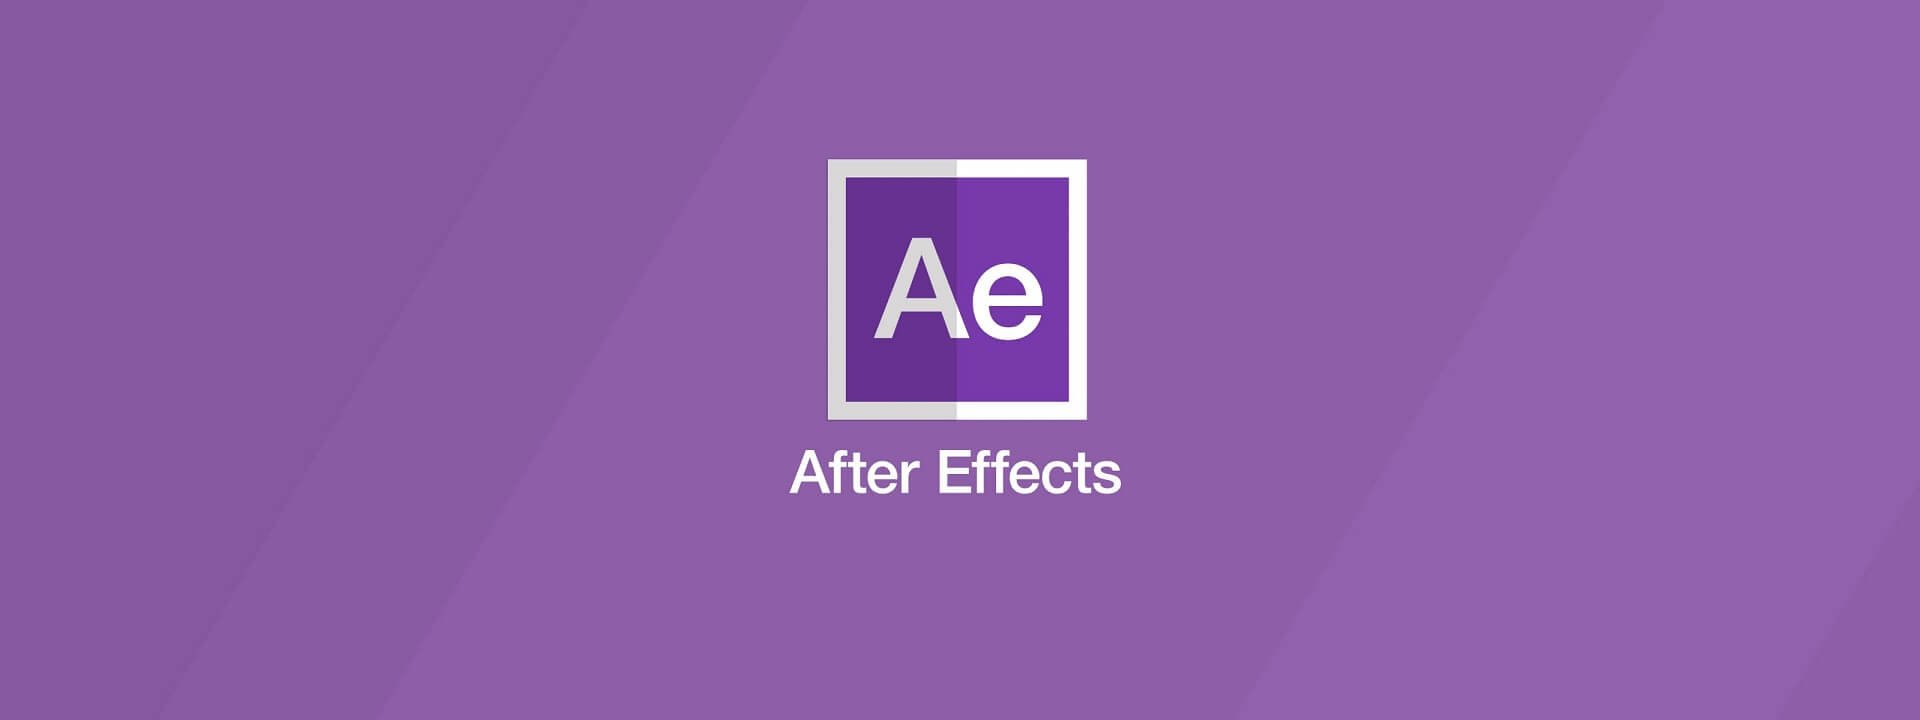 Free after Effects Logo Templates افتر افکت چیست و چه کاربرد هایی دارد ؟ هاو کن یو